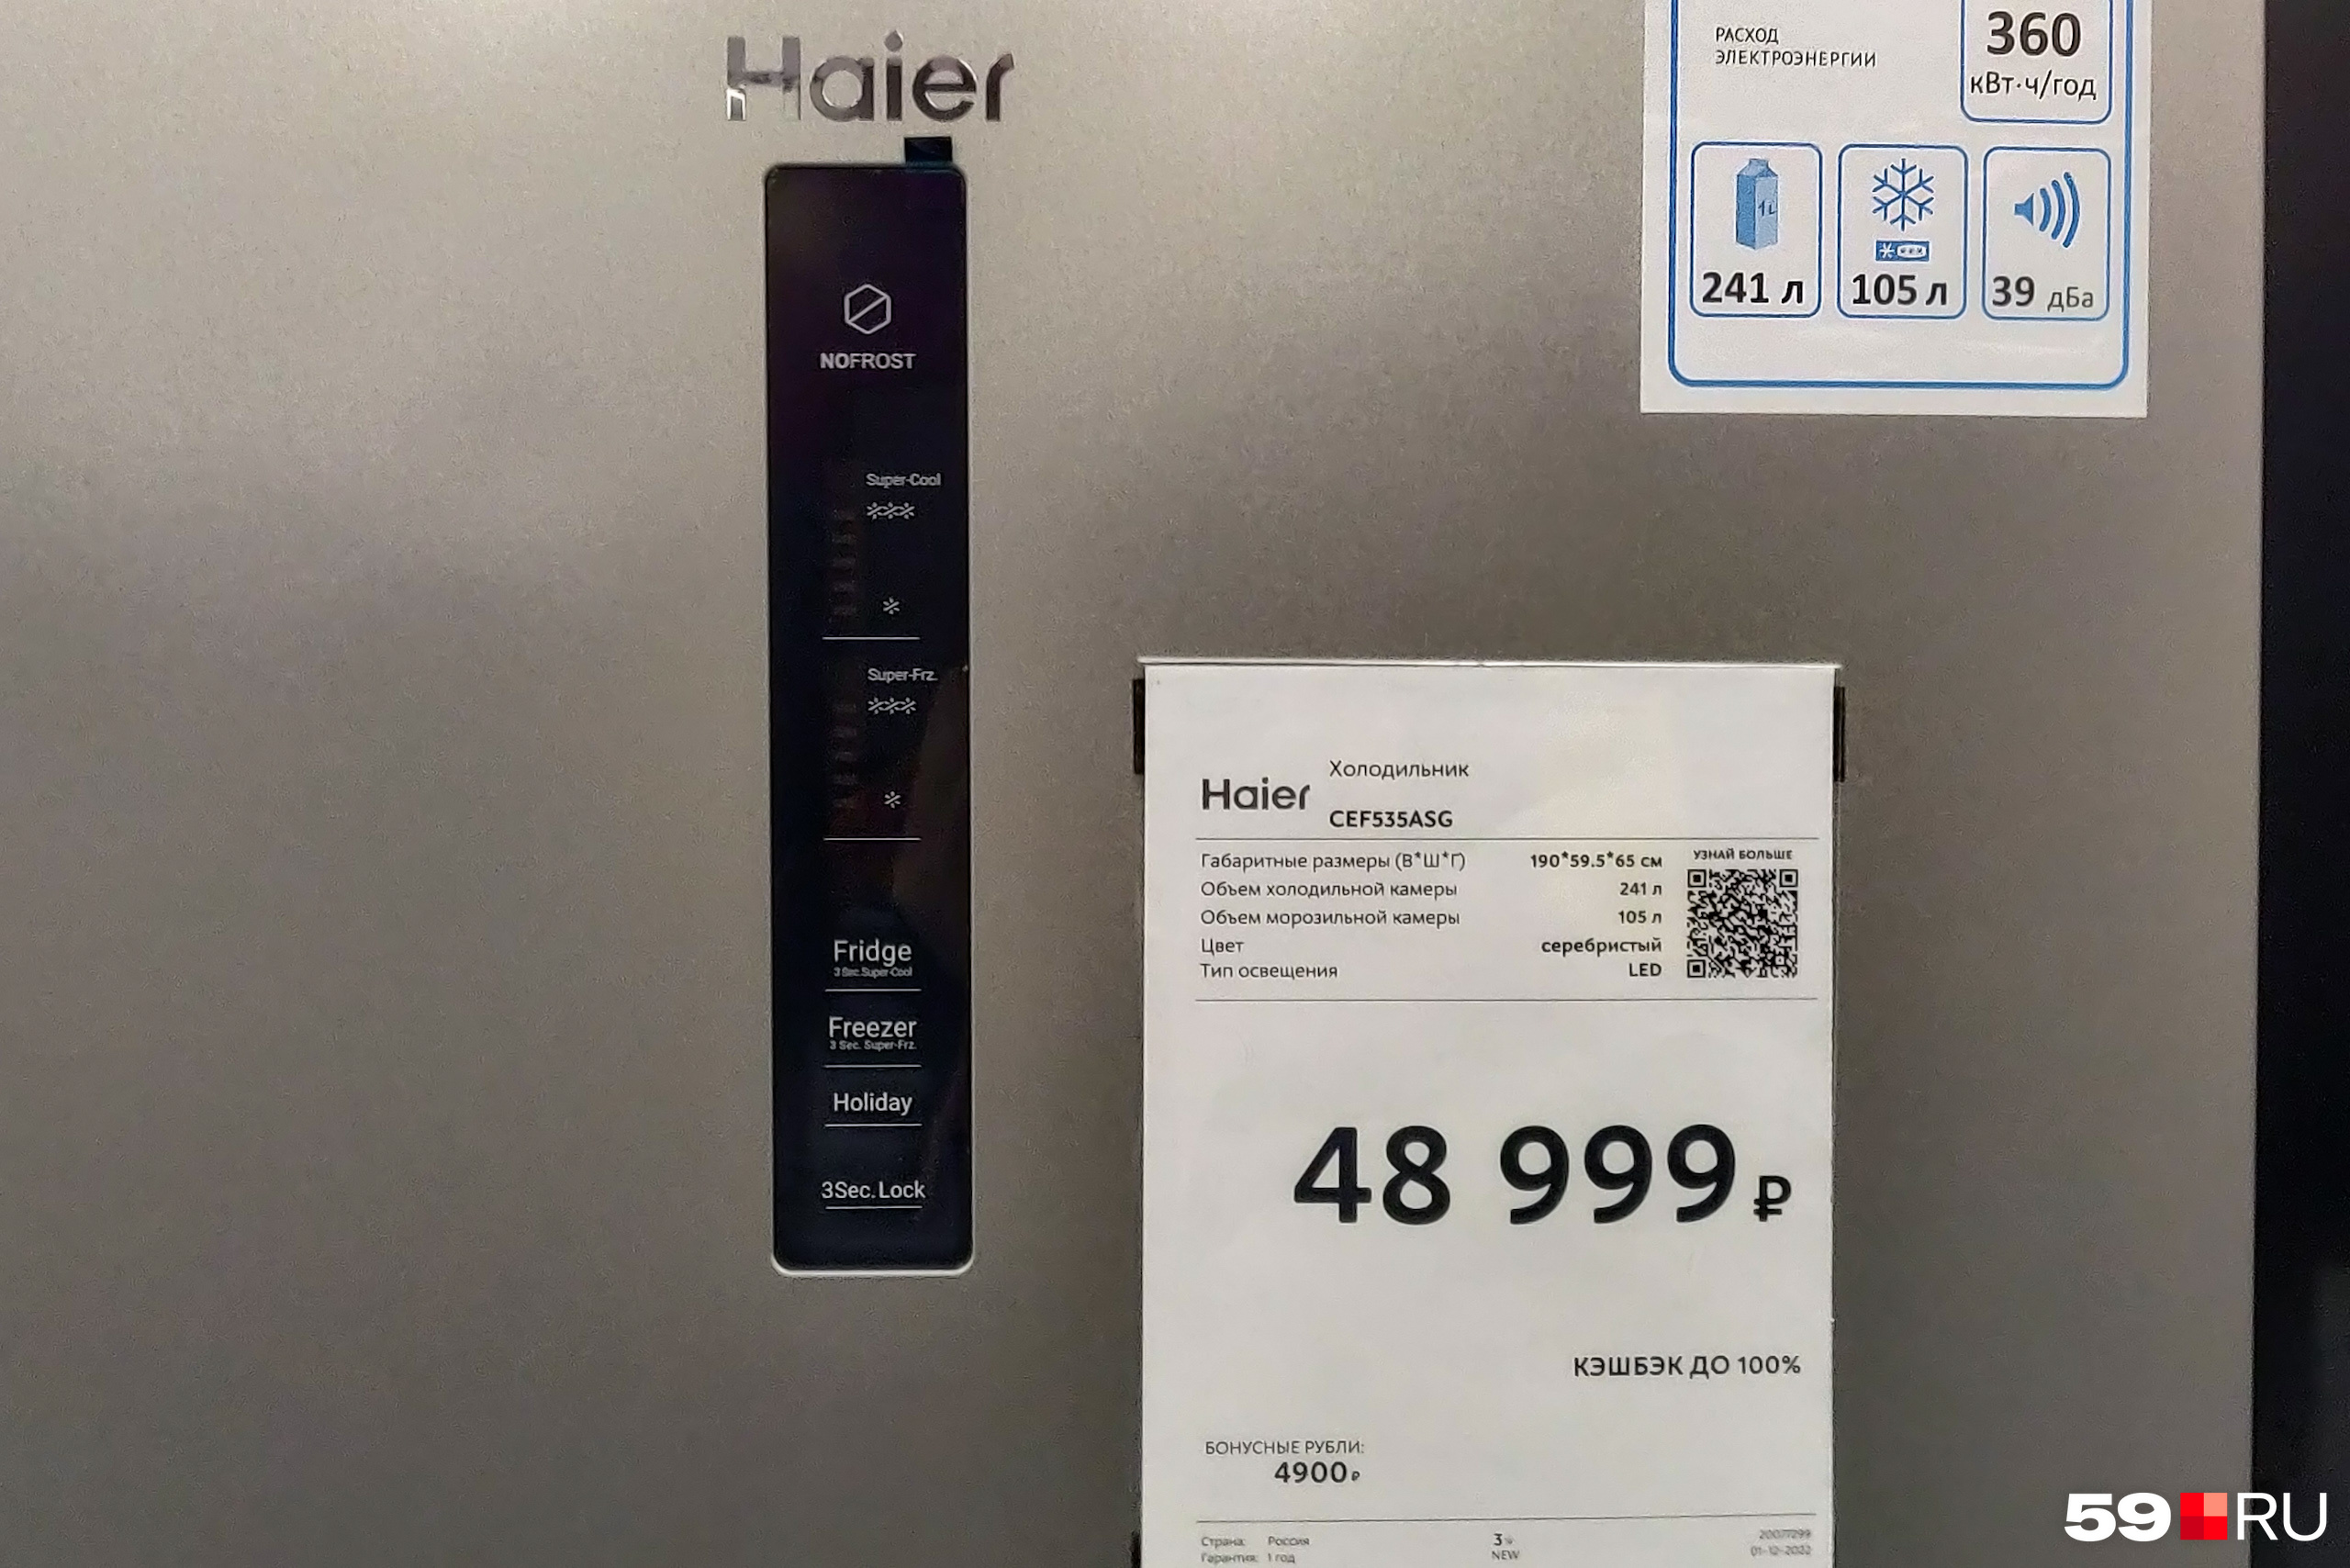 Холодильник Haier с объемом холодильной камеры 241 литр стоит почти 49 тысяч рублей